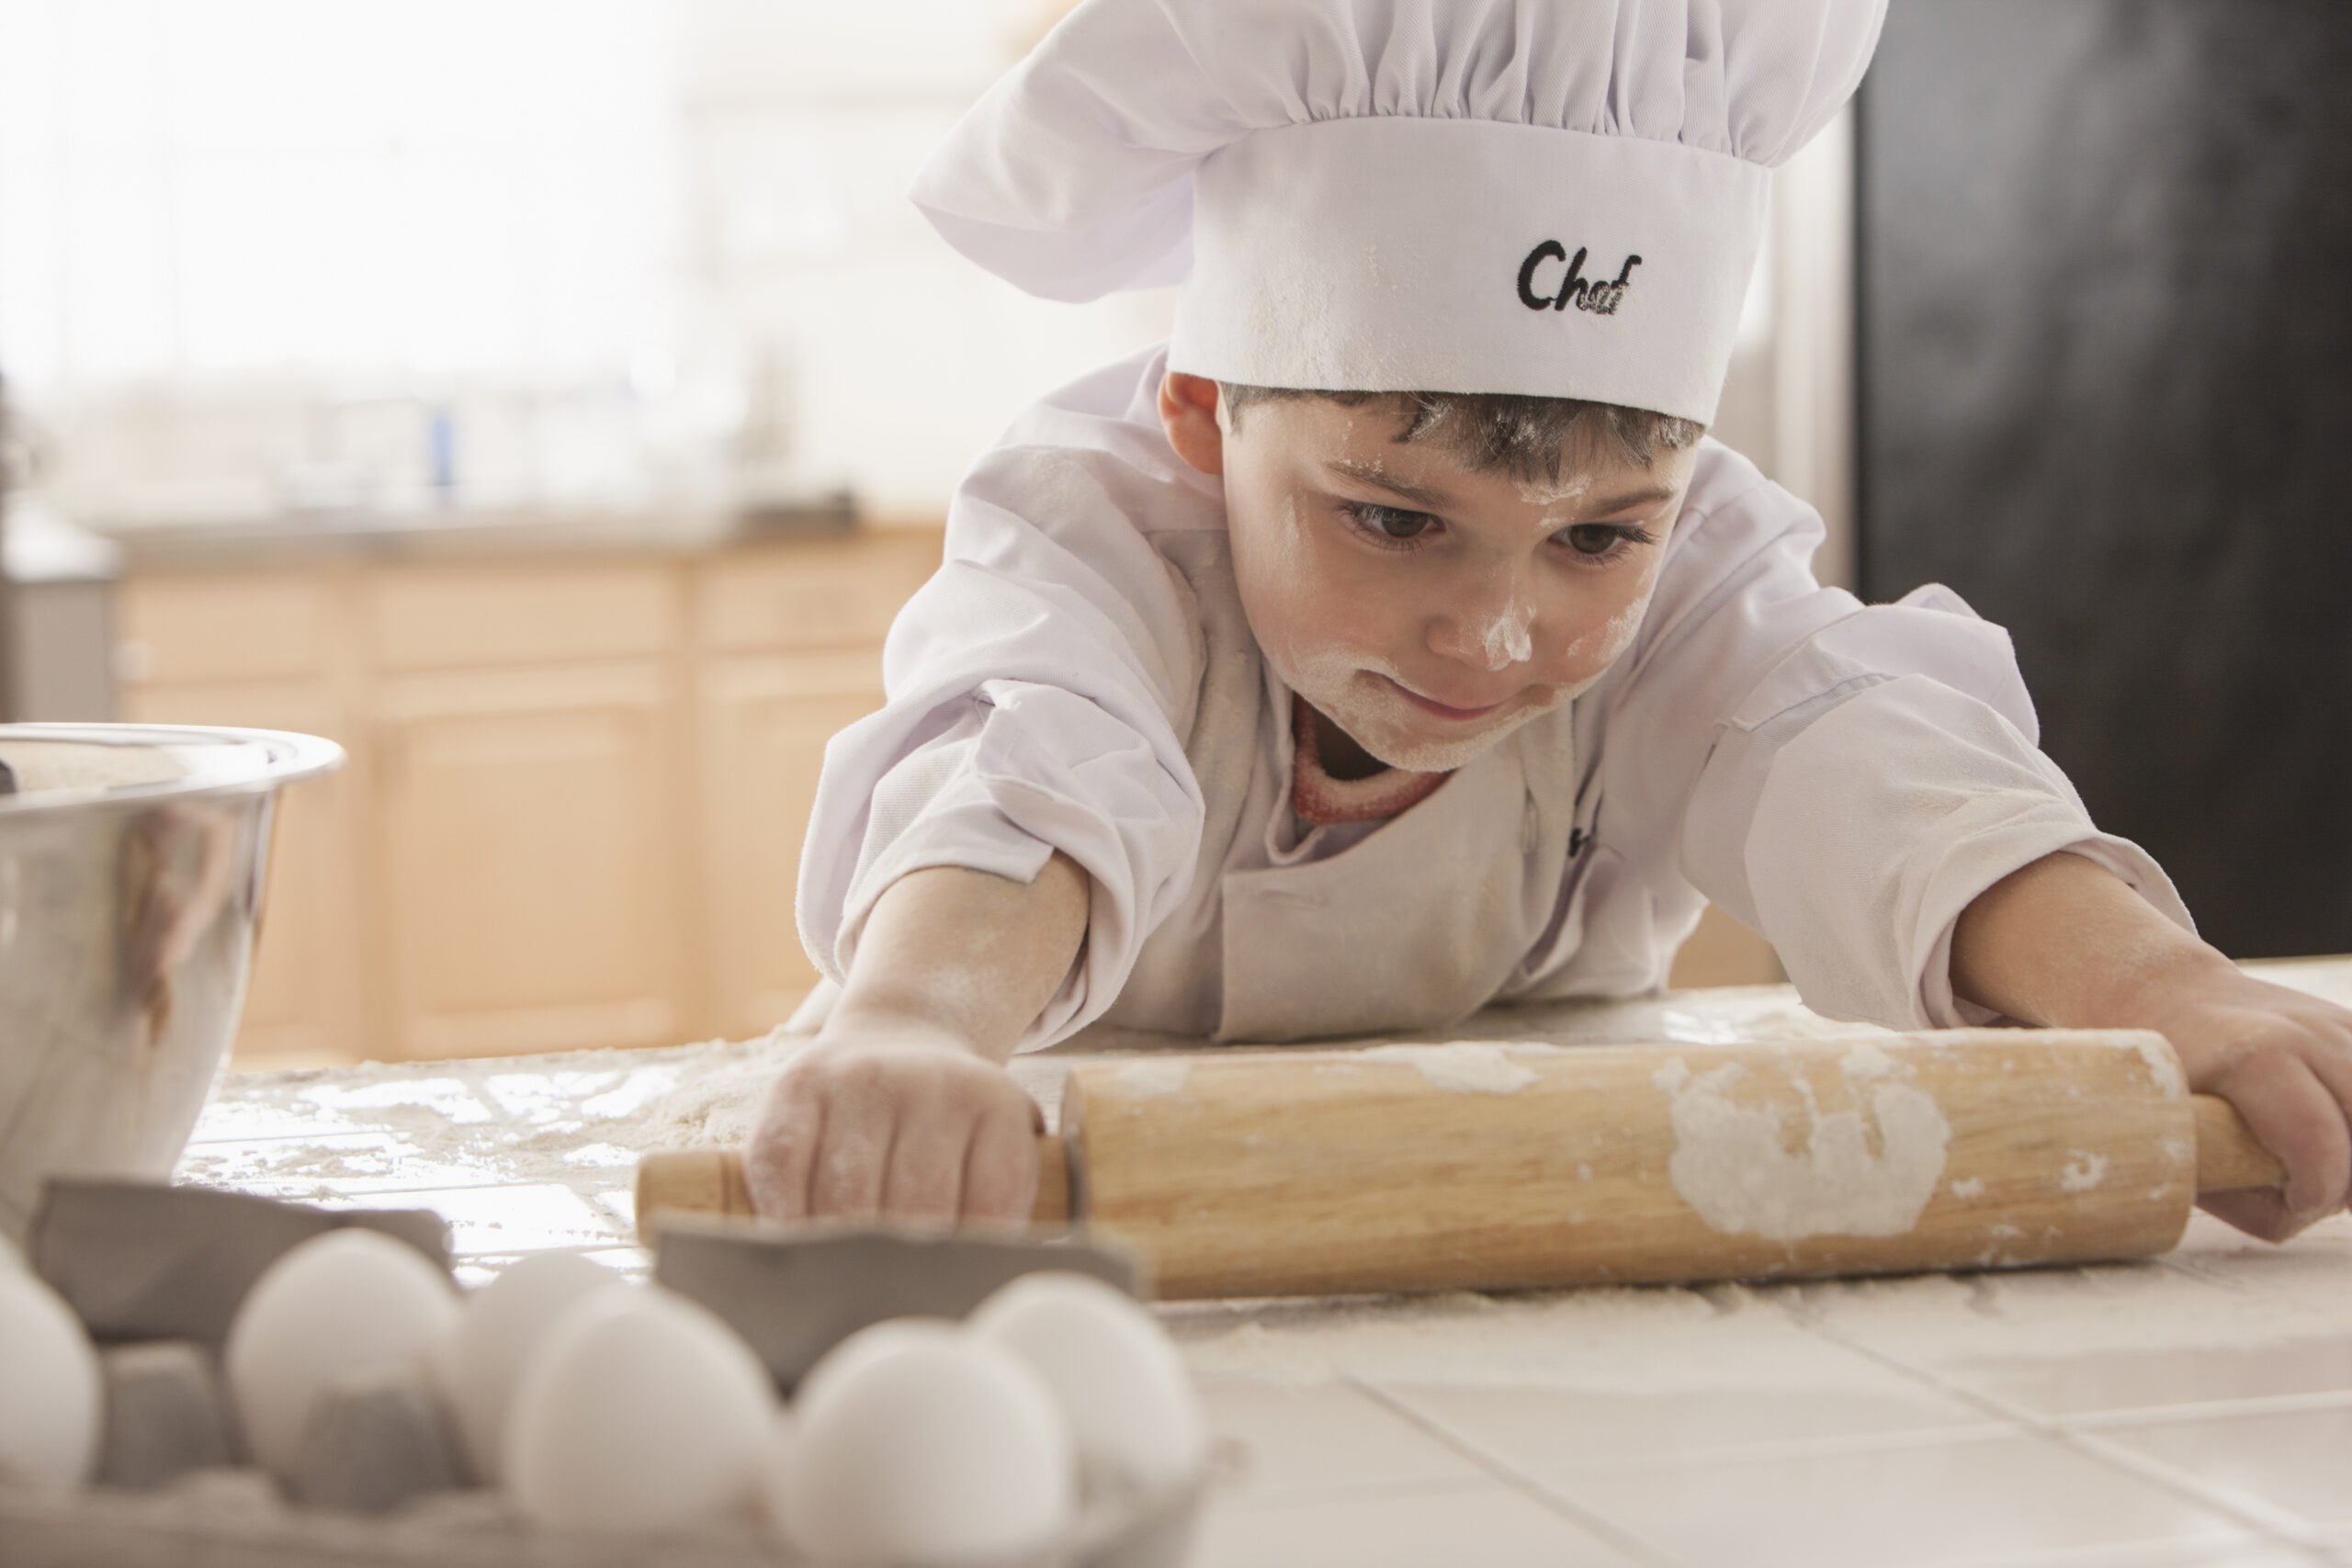 Boy baking in chef's whites